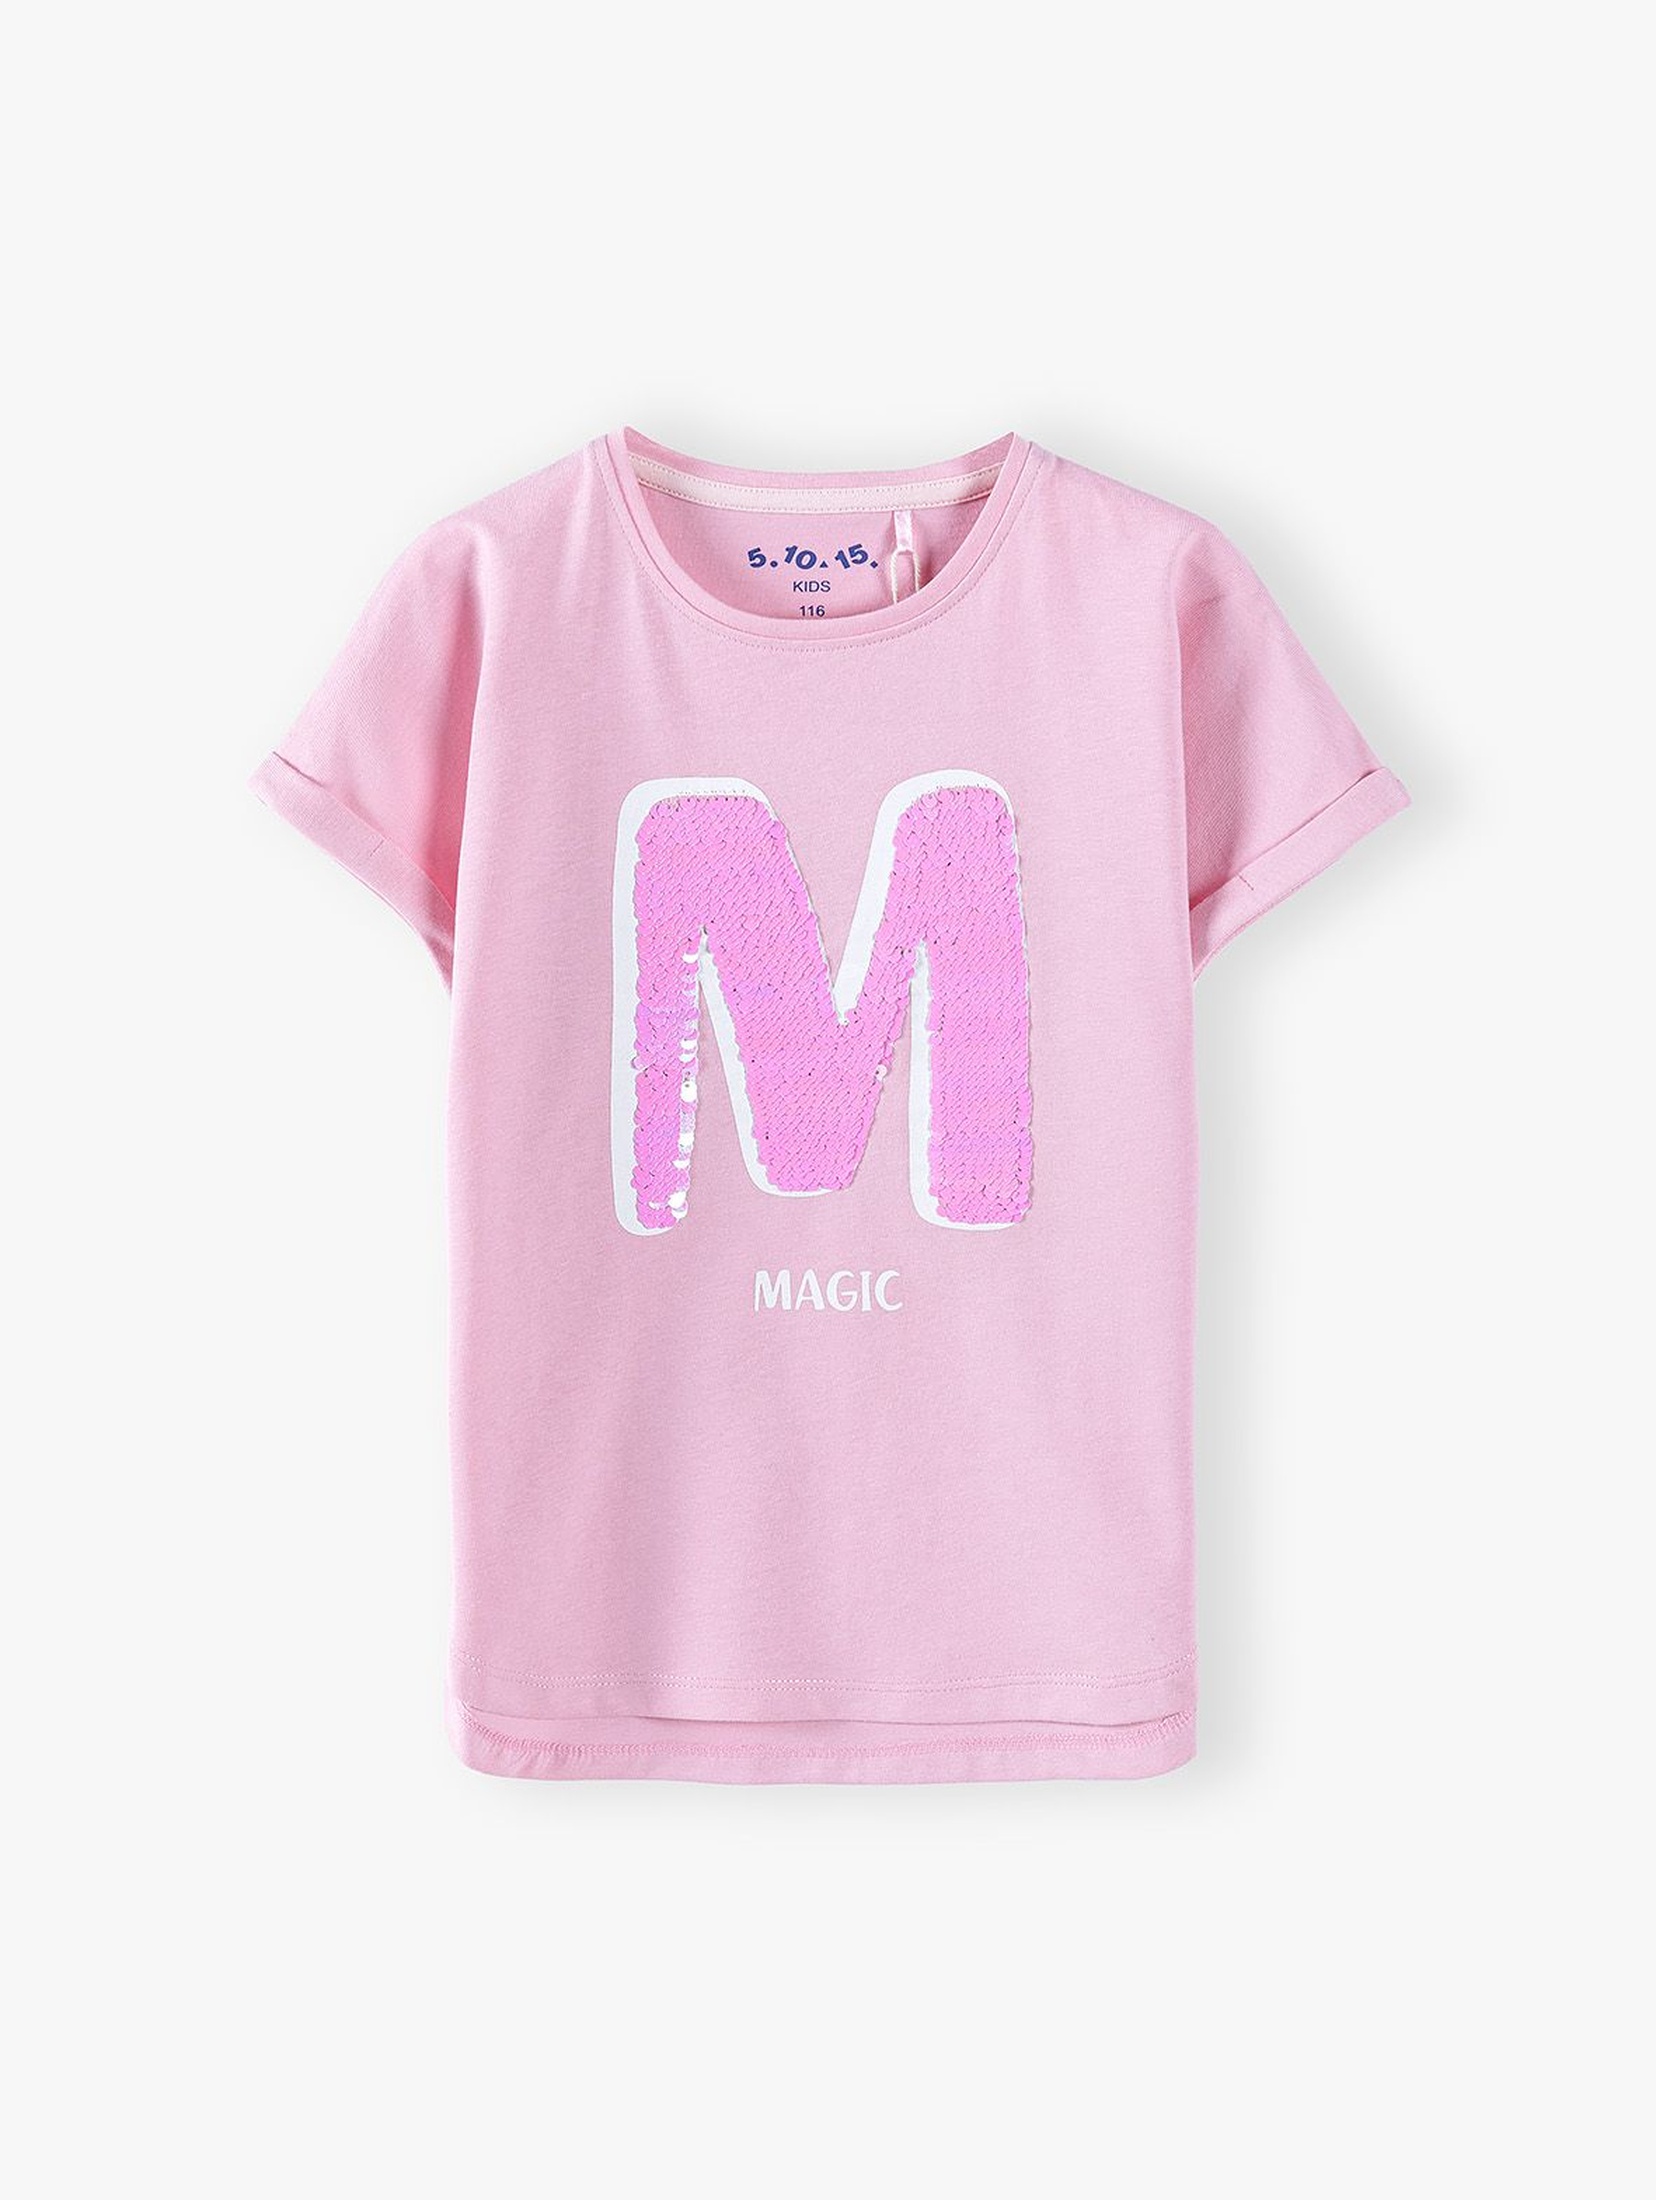 Bawełniany różowy t-shirt dziewczęcy z napisem Magic